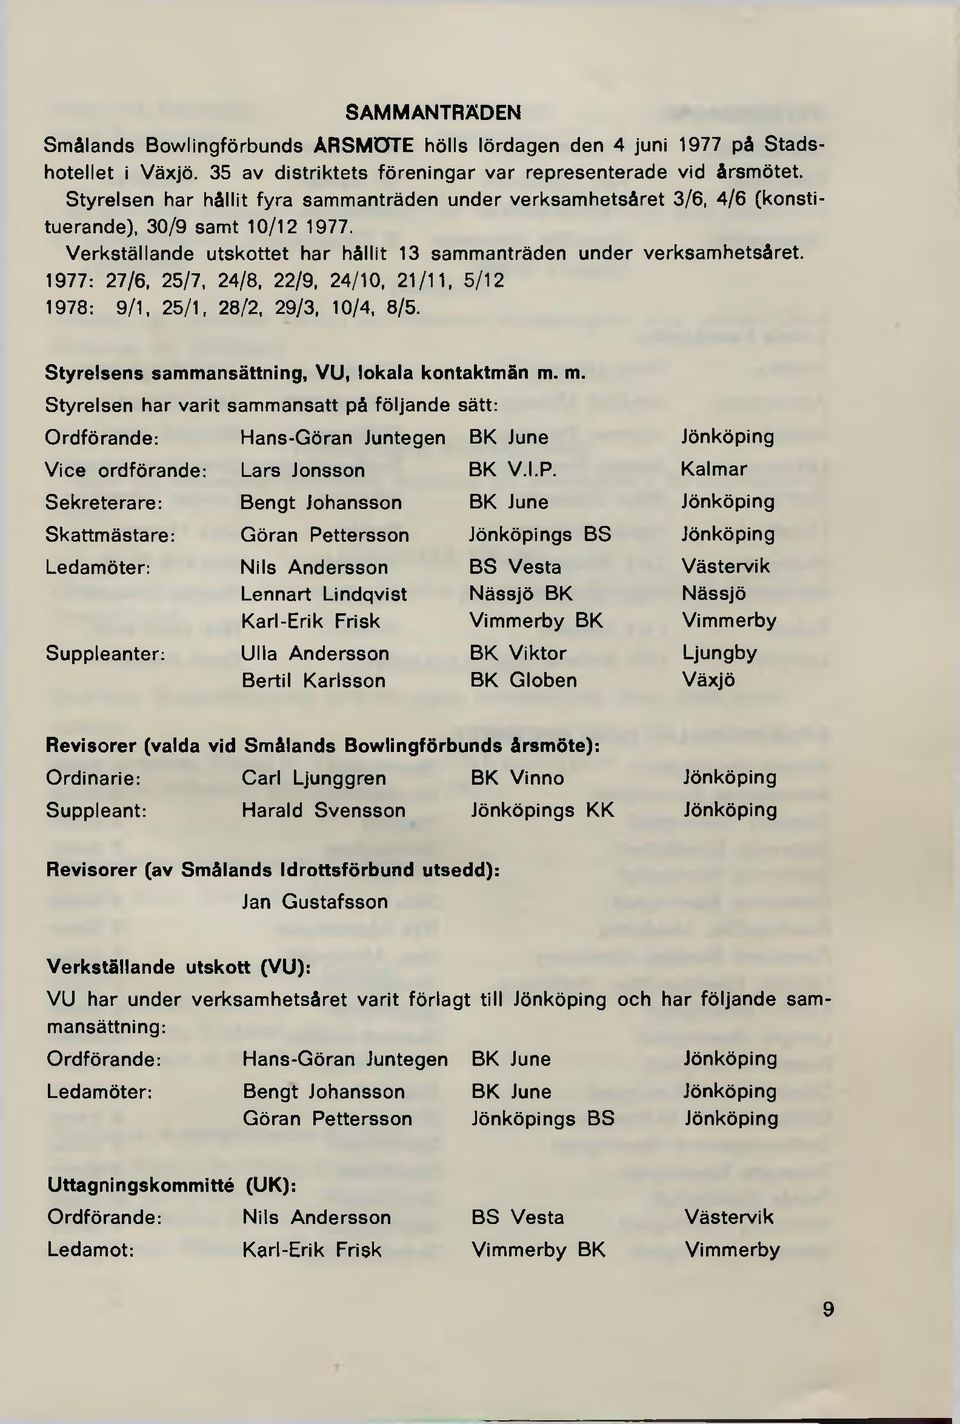 1977: 27/6, 25/7, 24/8, 22/9, 24/10, 21/11, 5/12 1978: 9/1, 25/1, 28/2, 29/3, 10/4, 8/5. Styrelsens sammansättning, VU, lokala kontaktm än m.